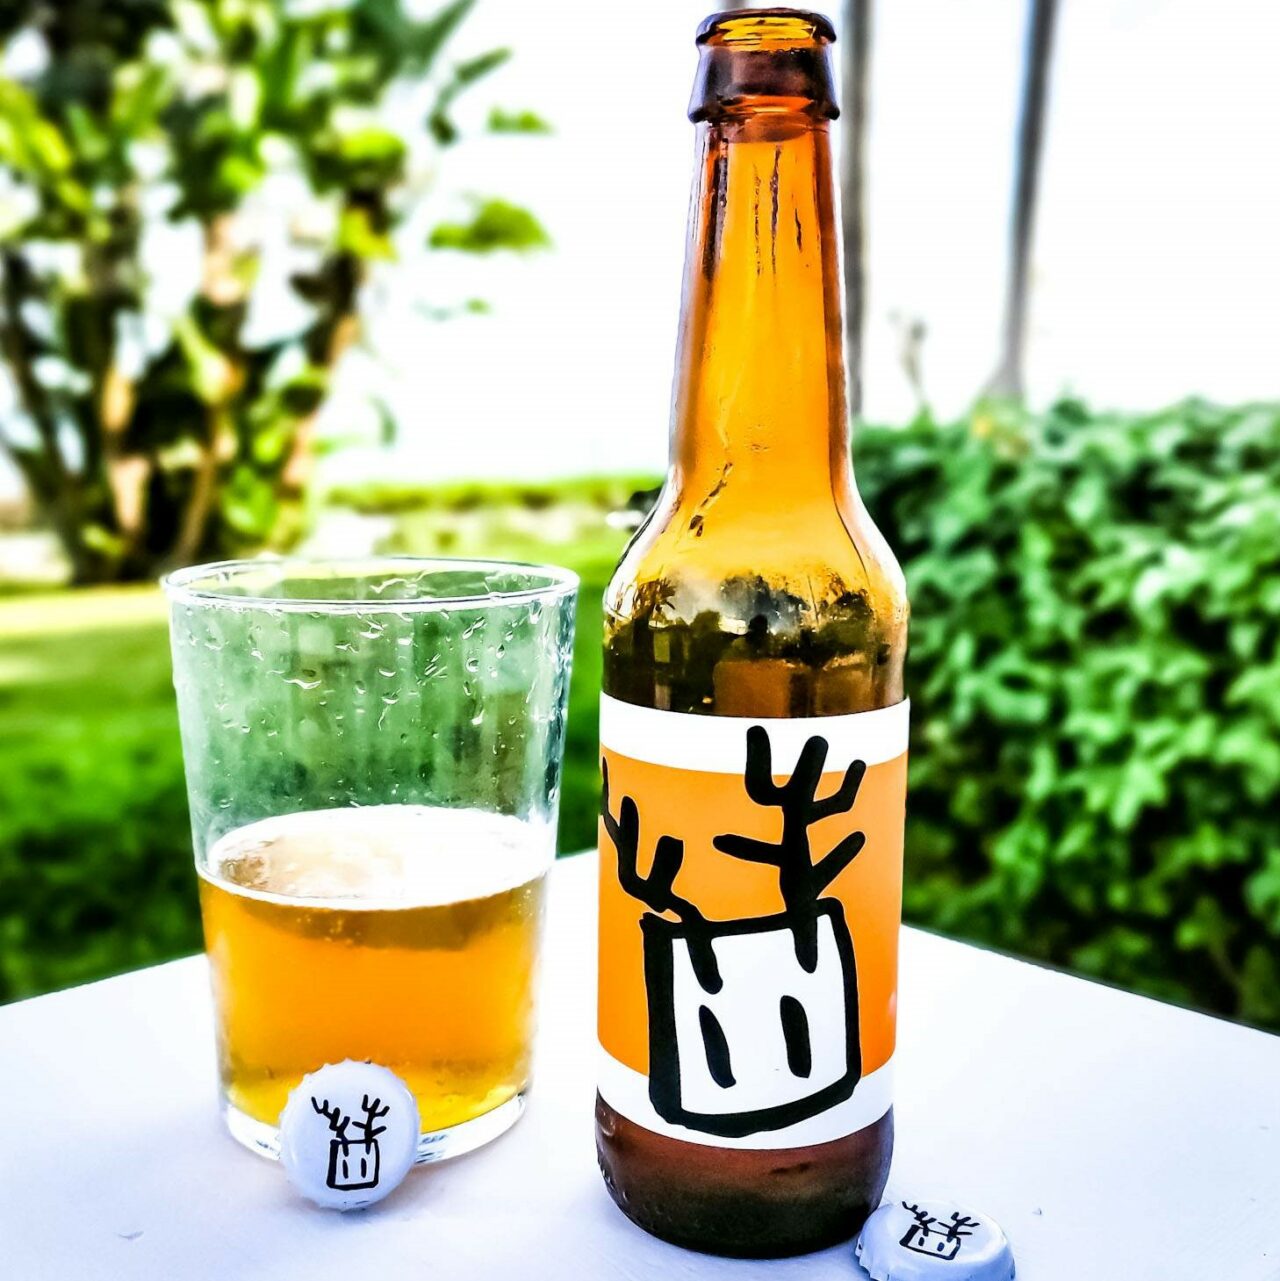 Hoppy IPA Bonvivant Beer | Craft beer in Malaga, Spain | Craft Beer Nomads